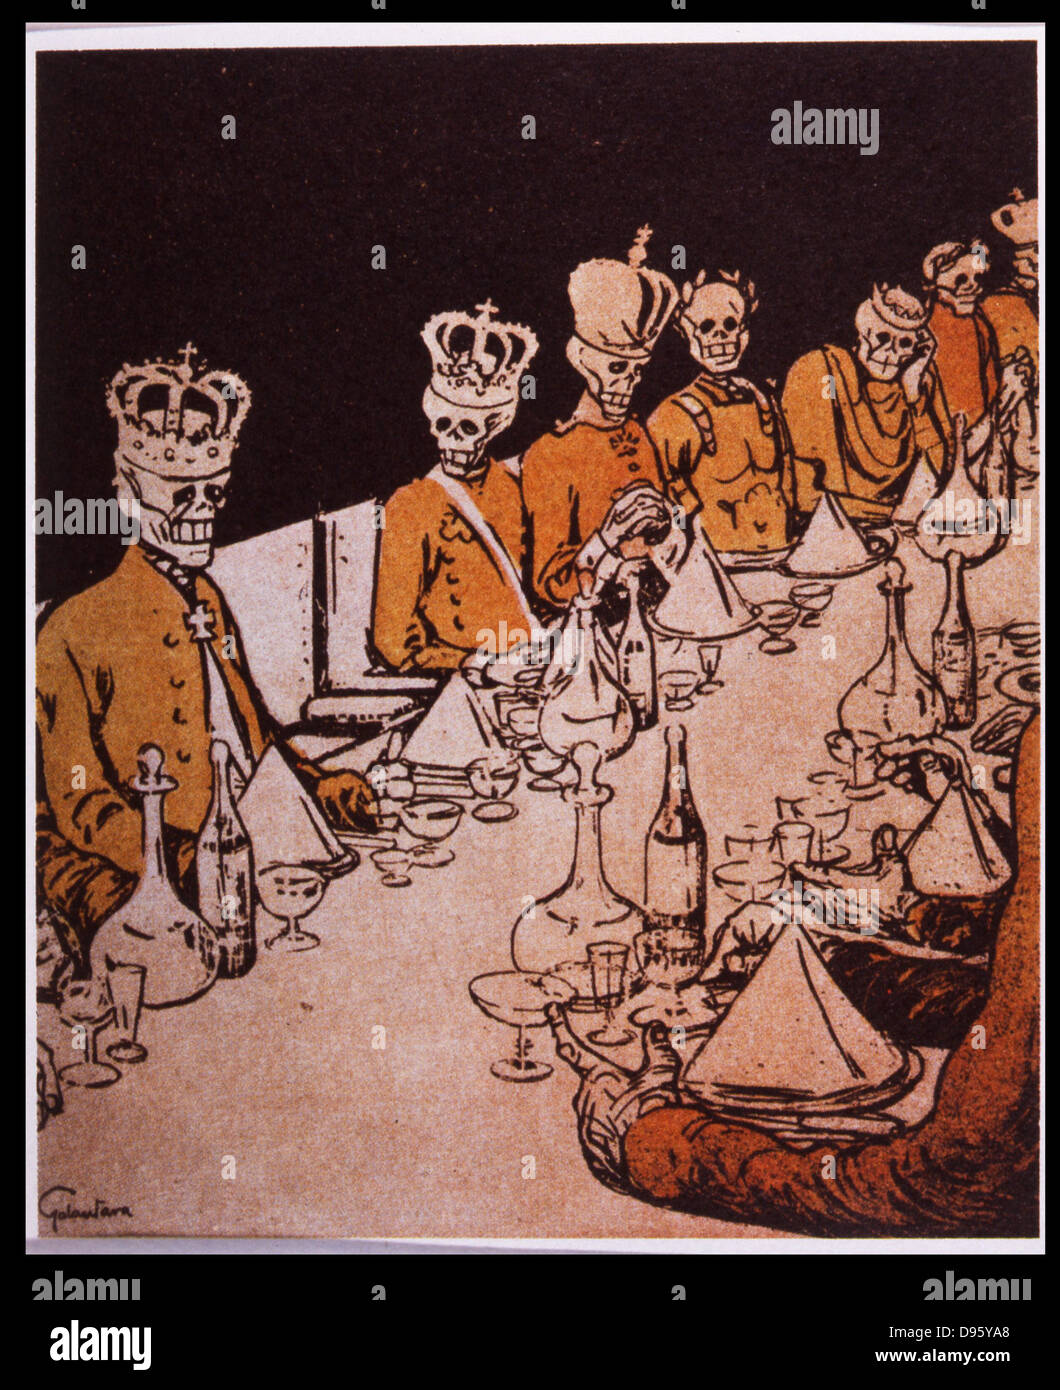 Previsioni del futuro dei monarchi europei dopo il 1905 la rivoluzione in Russia. Cartone animato da 'L'assiette au Beurre", Parigi, 29 settembre 1905. Foto Stock